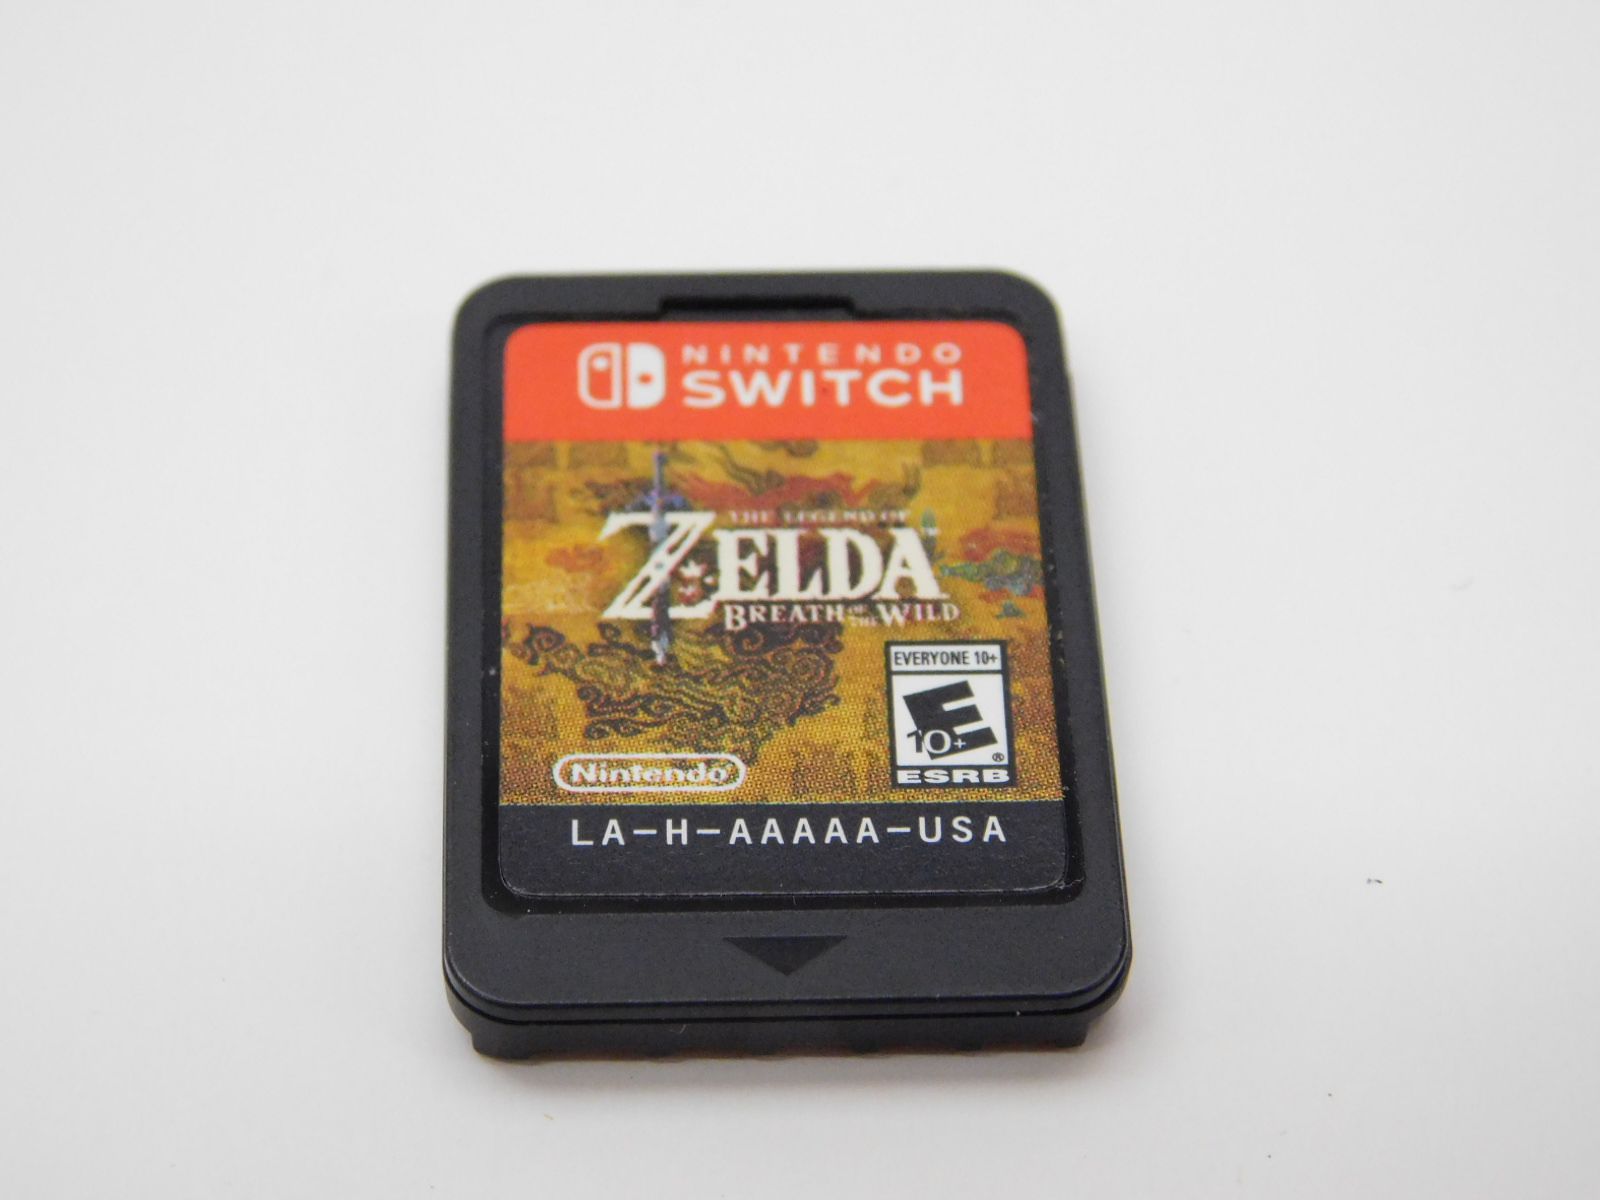 The Legend of Zelda: Breath of the Wild, Jogos para a Nintendo Switch, Jogos